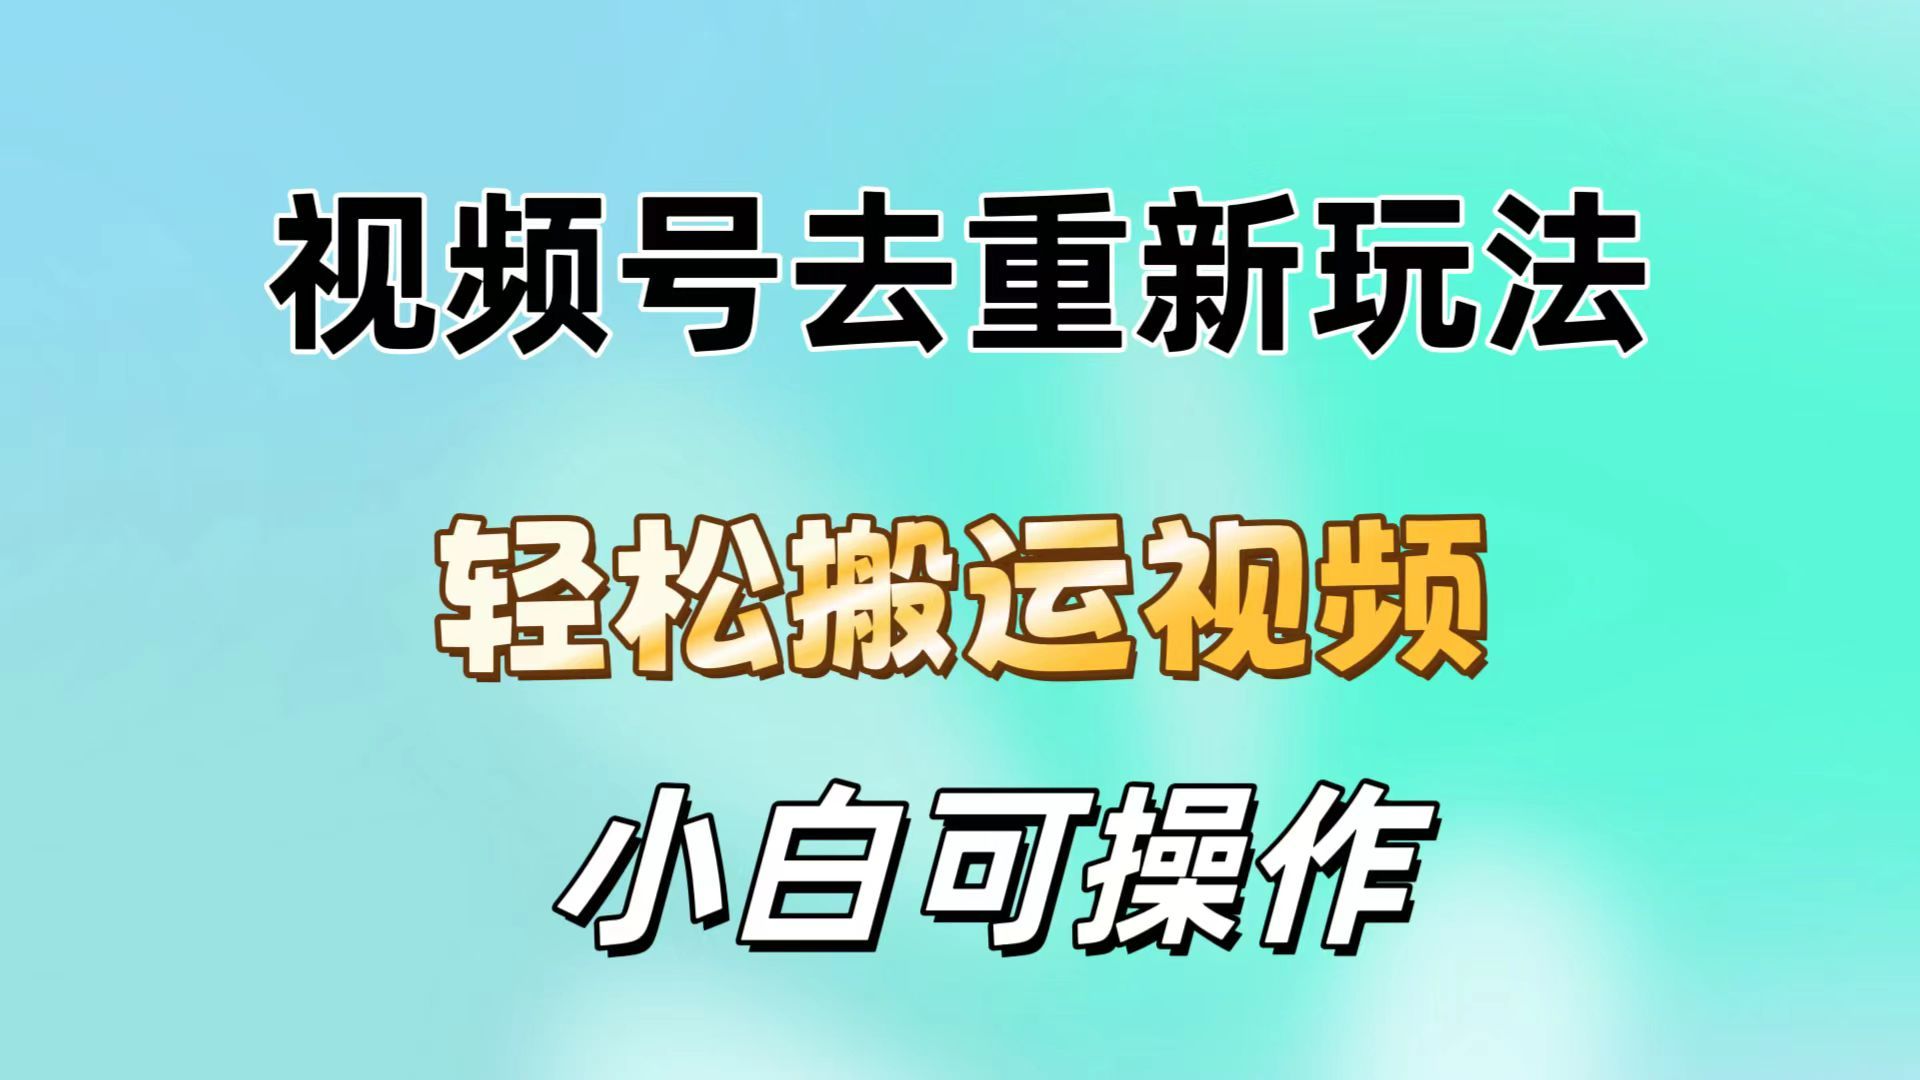 钱包的中文_tp钱包中文名_tp钱包设置中文